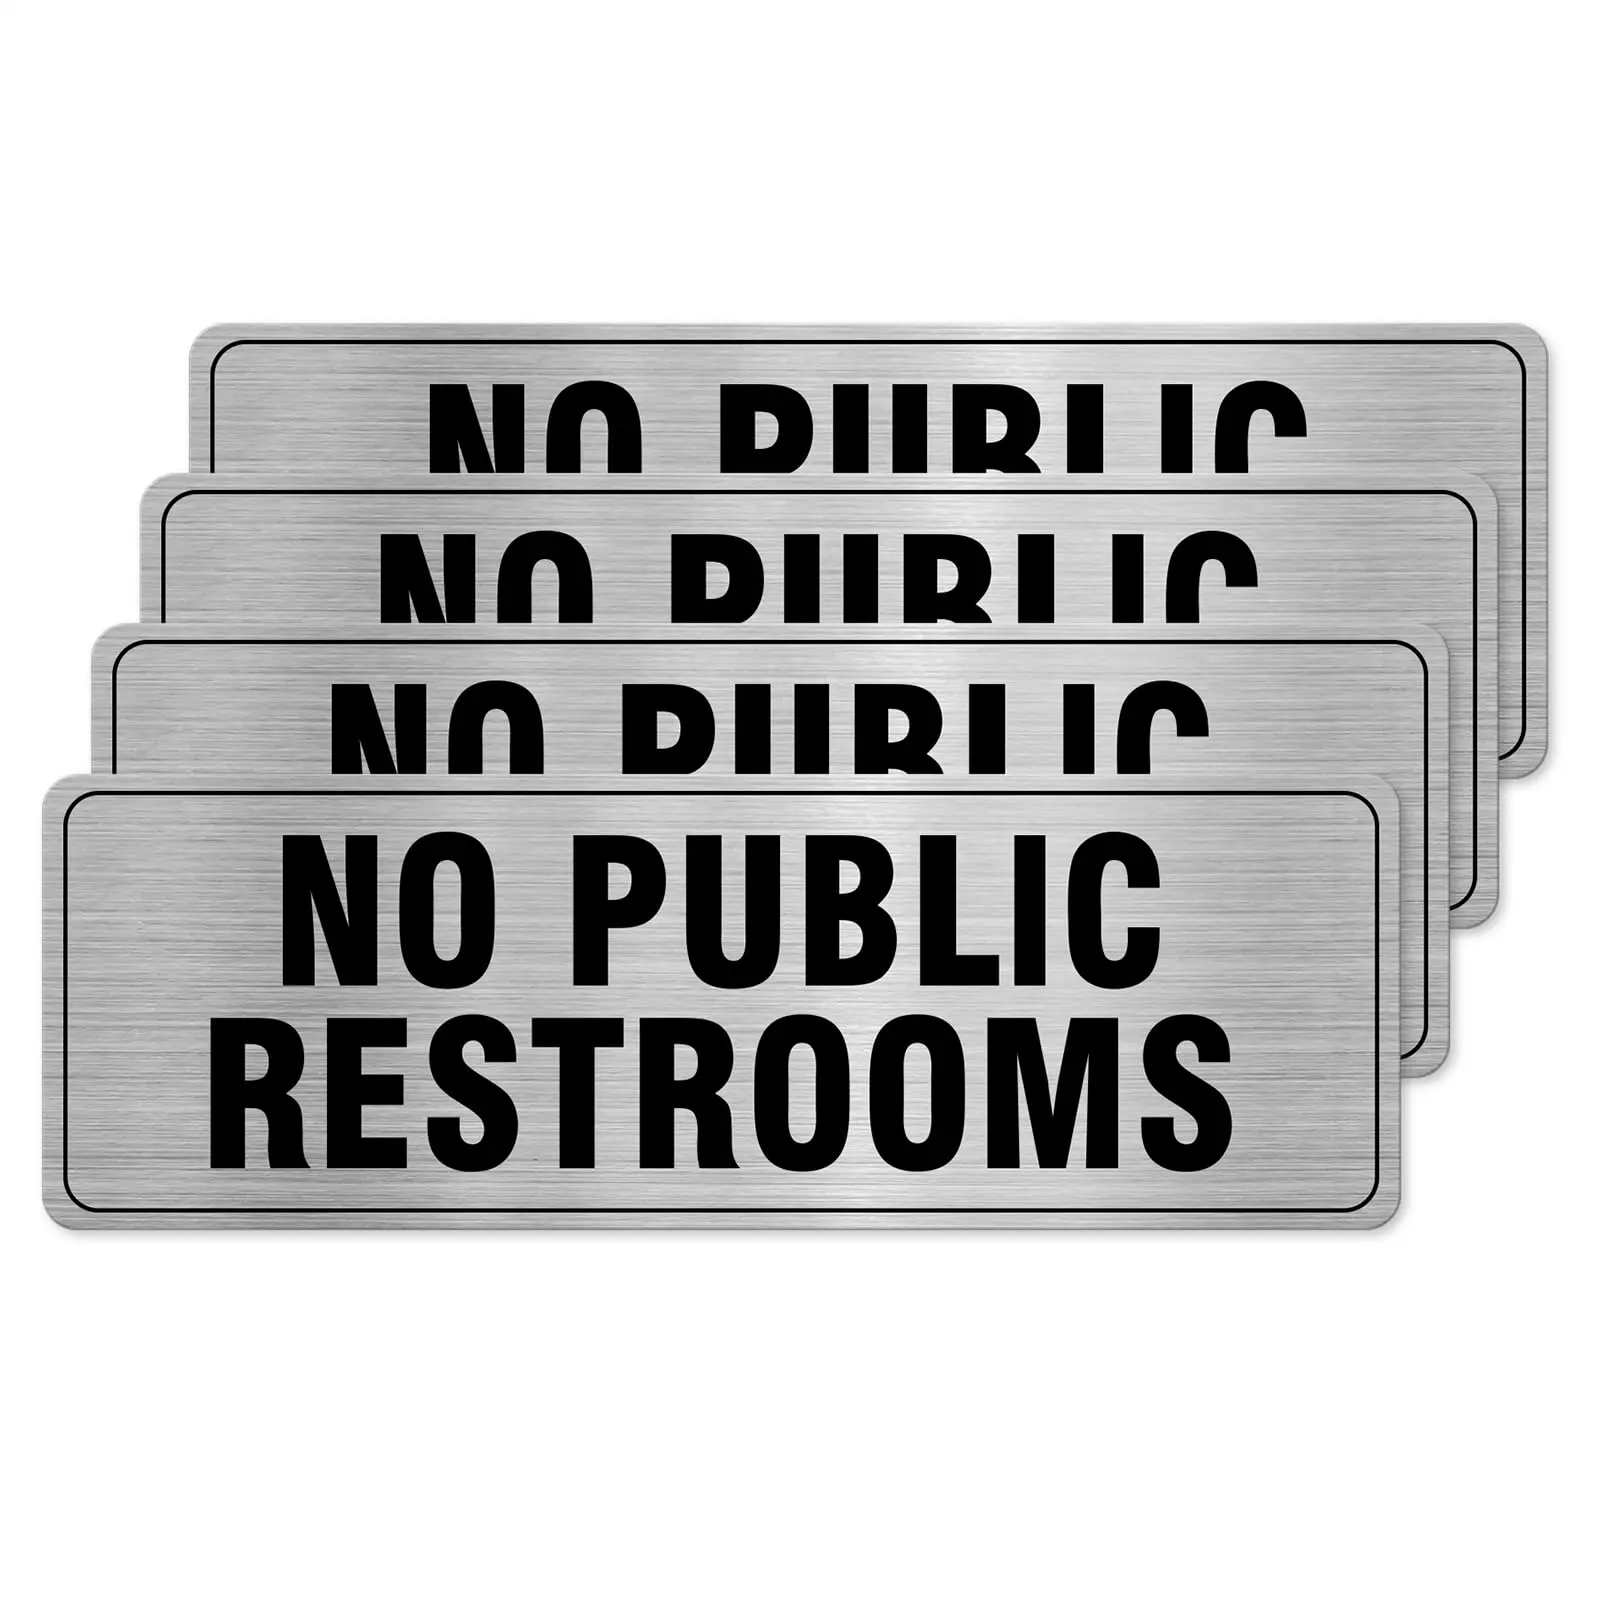 Знак Securun No для общественных туалетов, алюминиевая Серебряная самоклеящаяся Водонепроницаемая металлическая дверная настенная вывеска 9x3 дюйма для деловых офисов